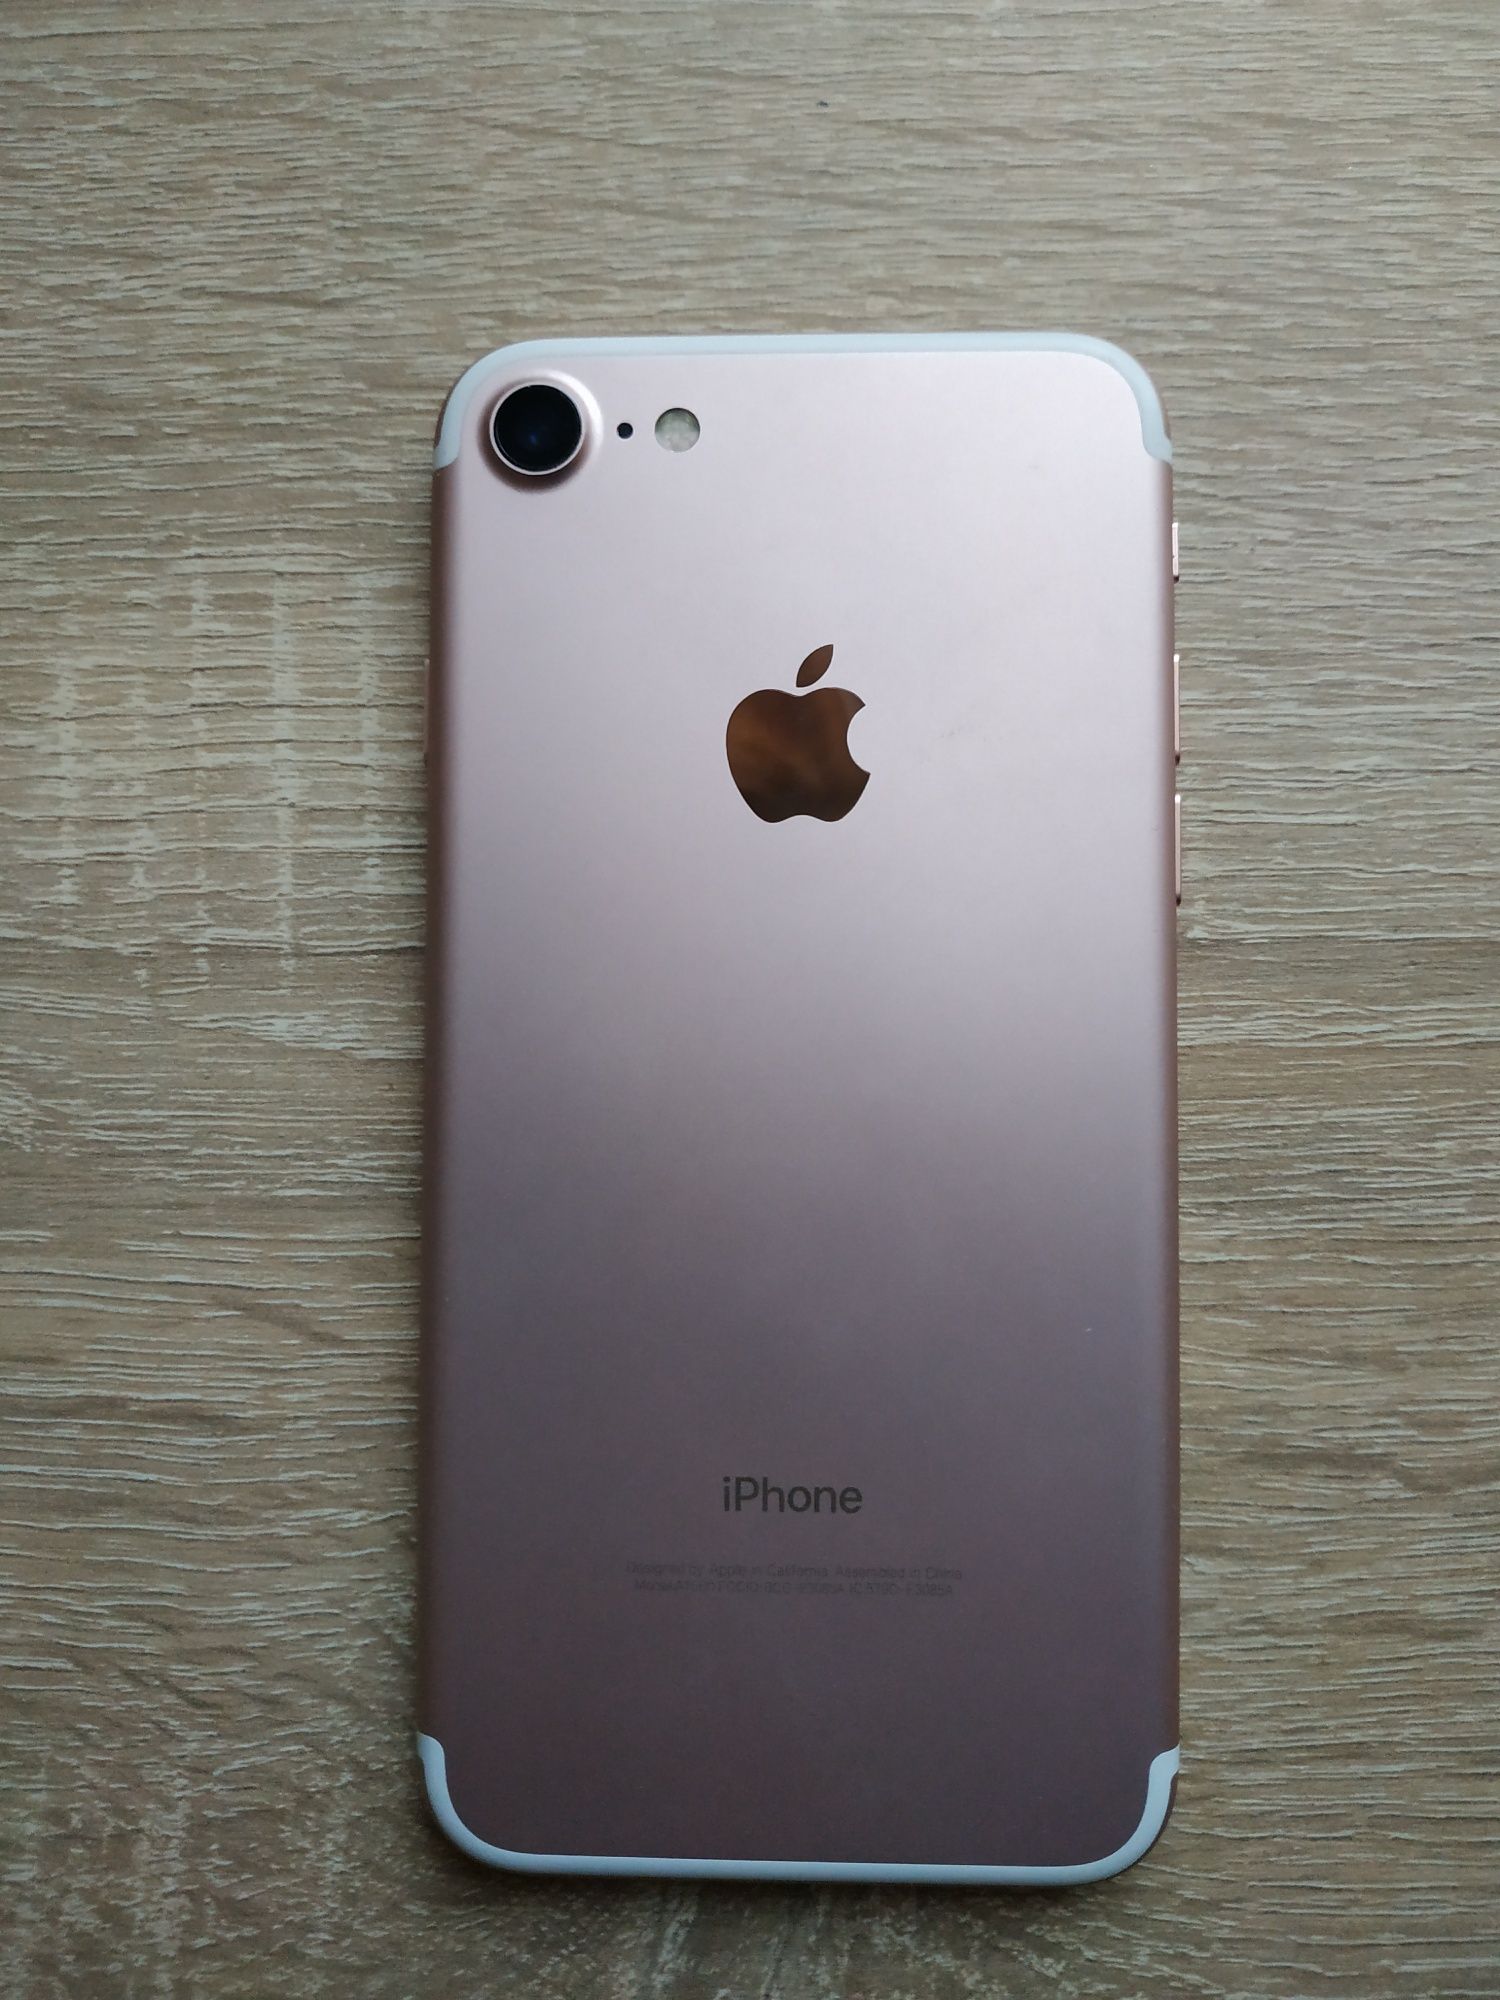 iPhone 7,Rose Gold,128 GB